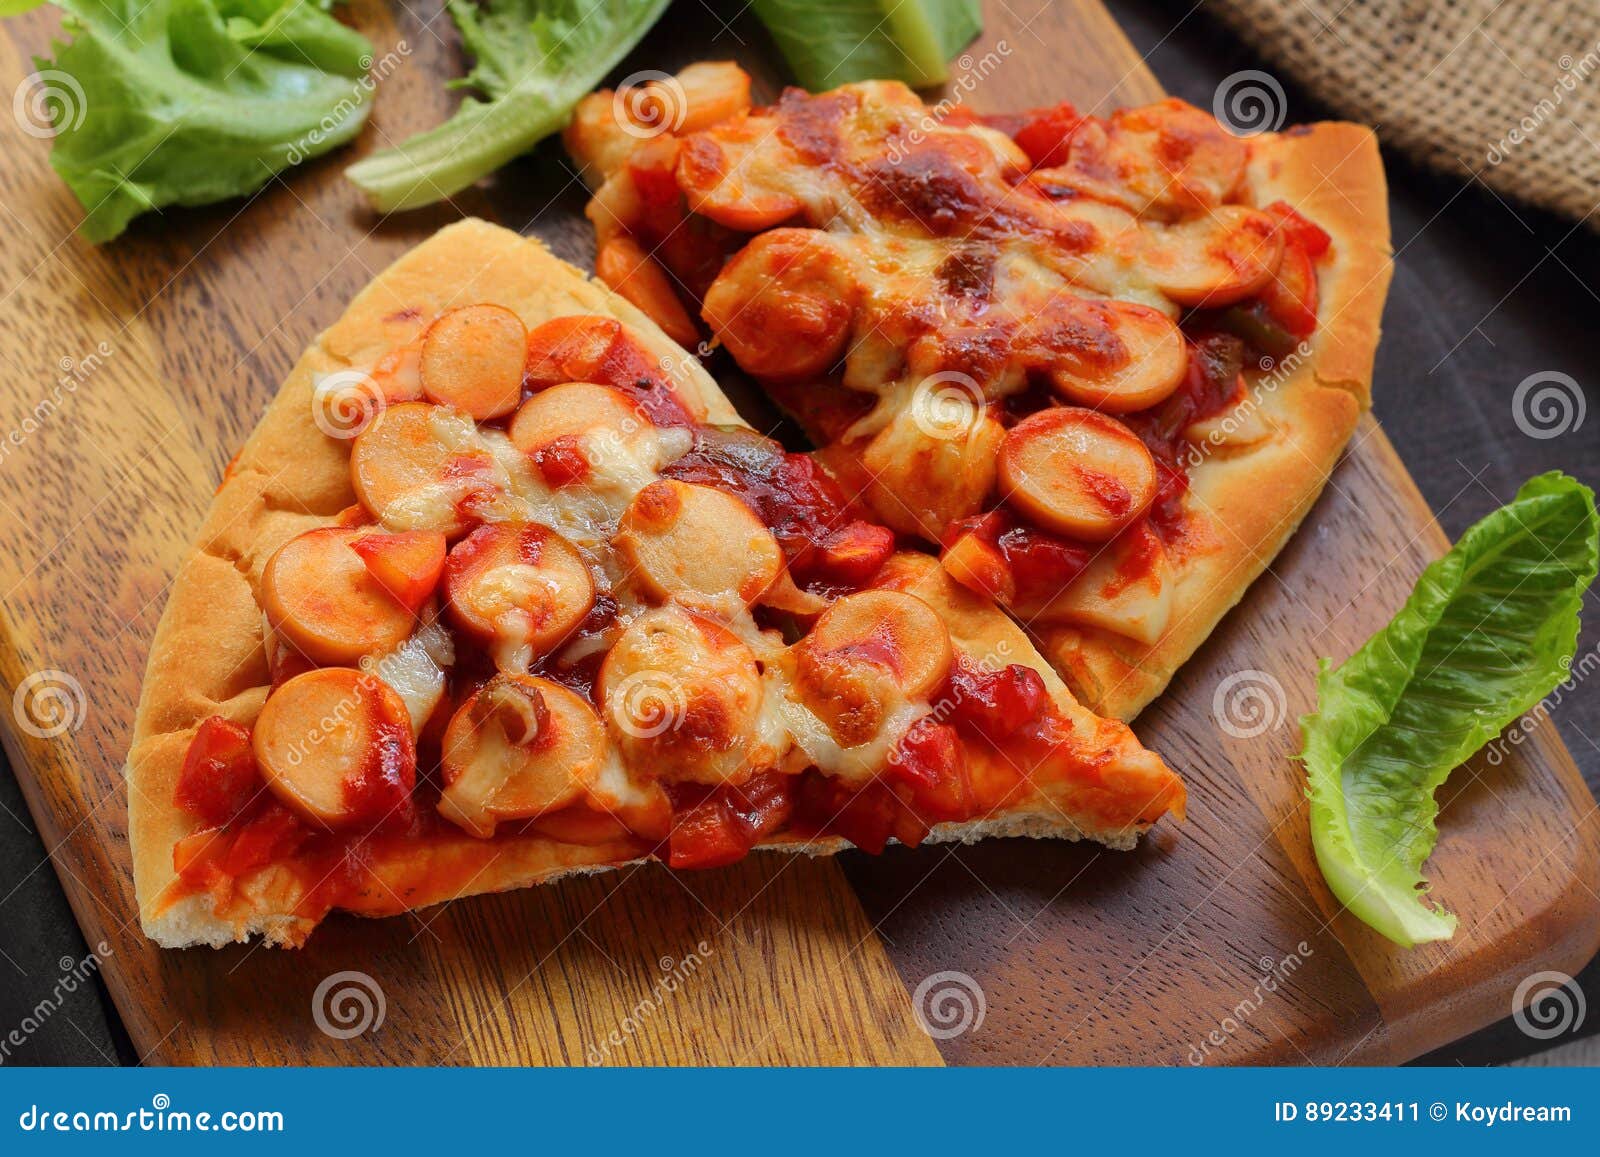 pizza is italain food.